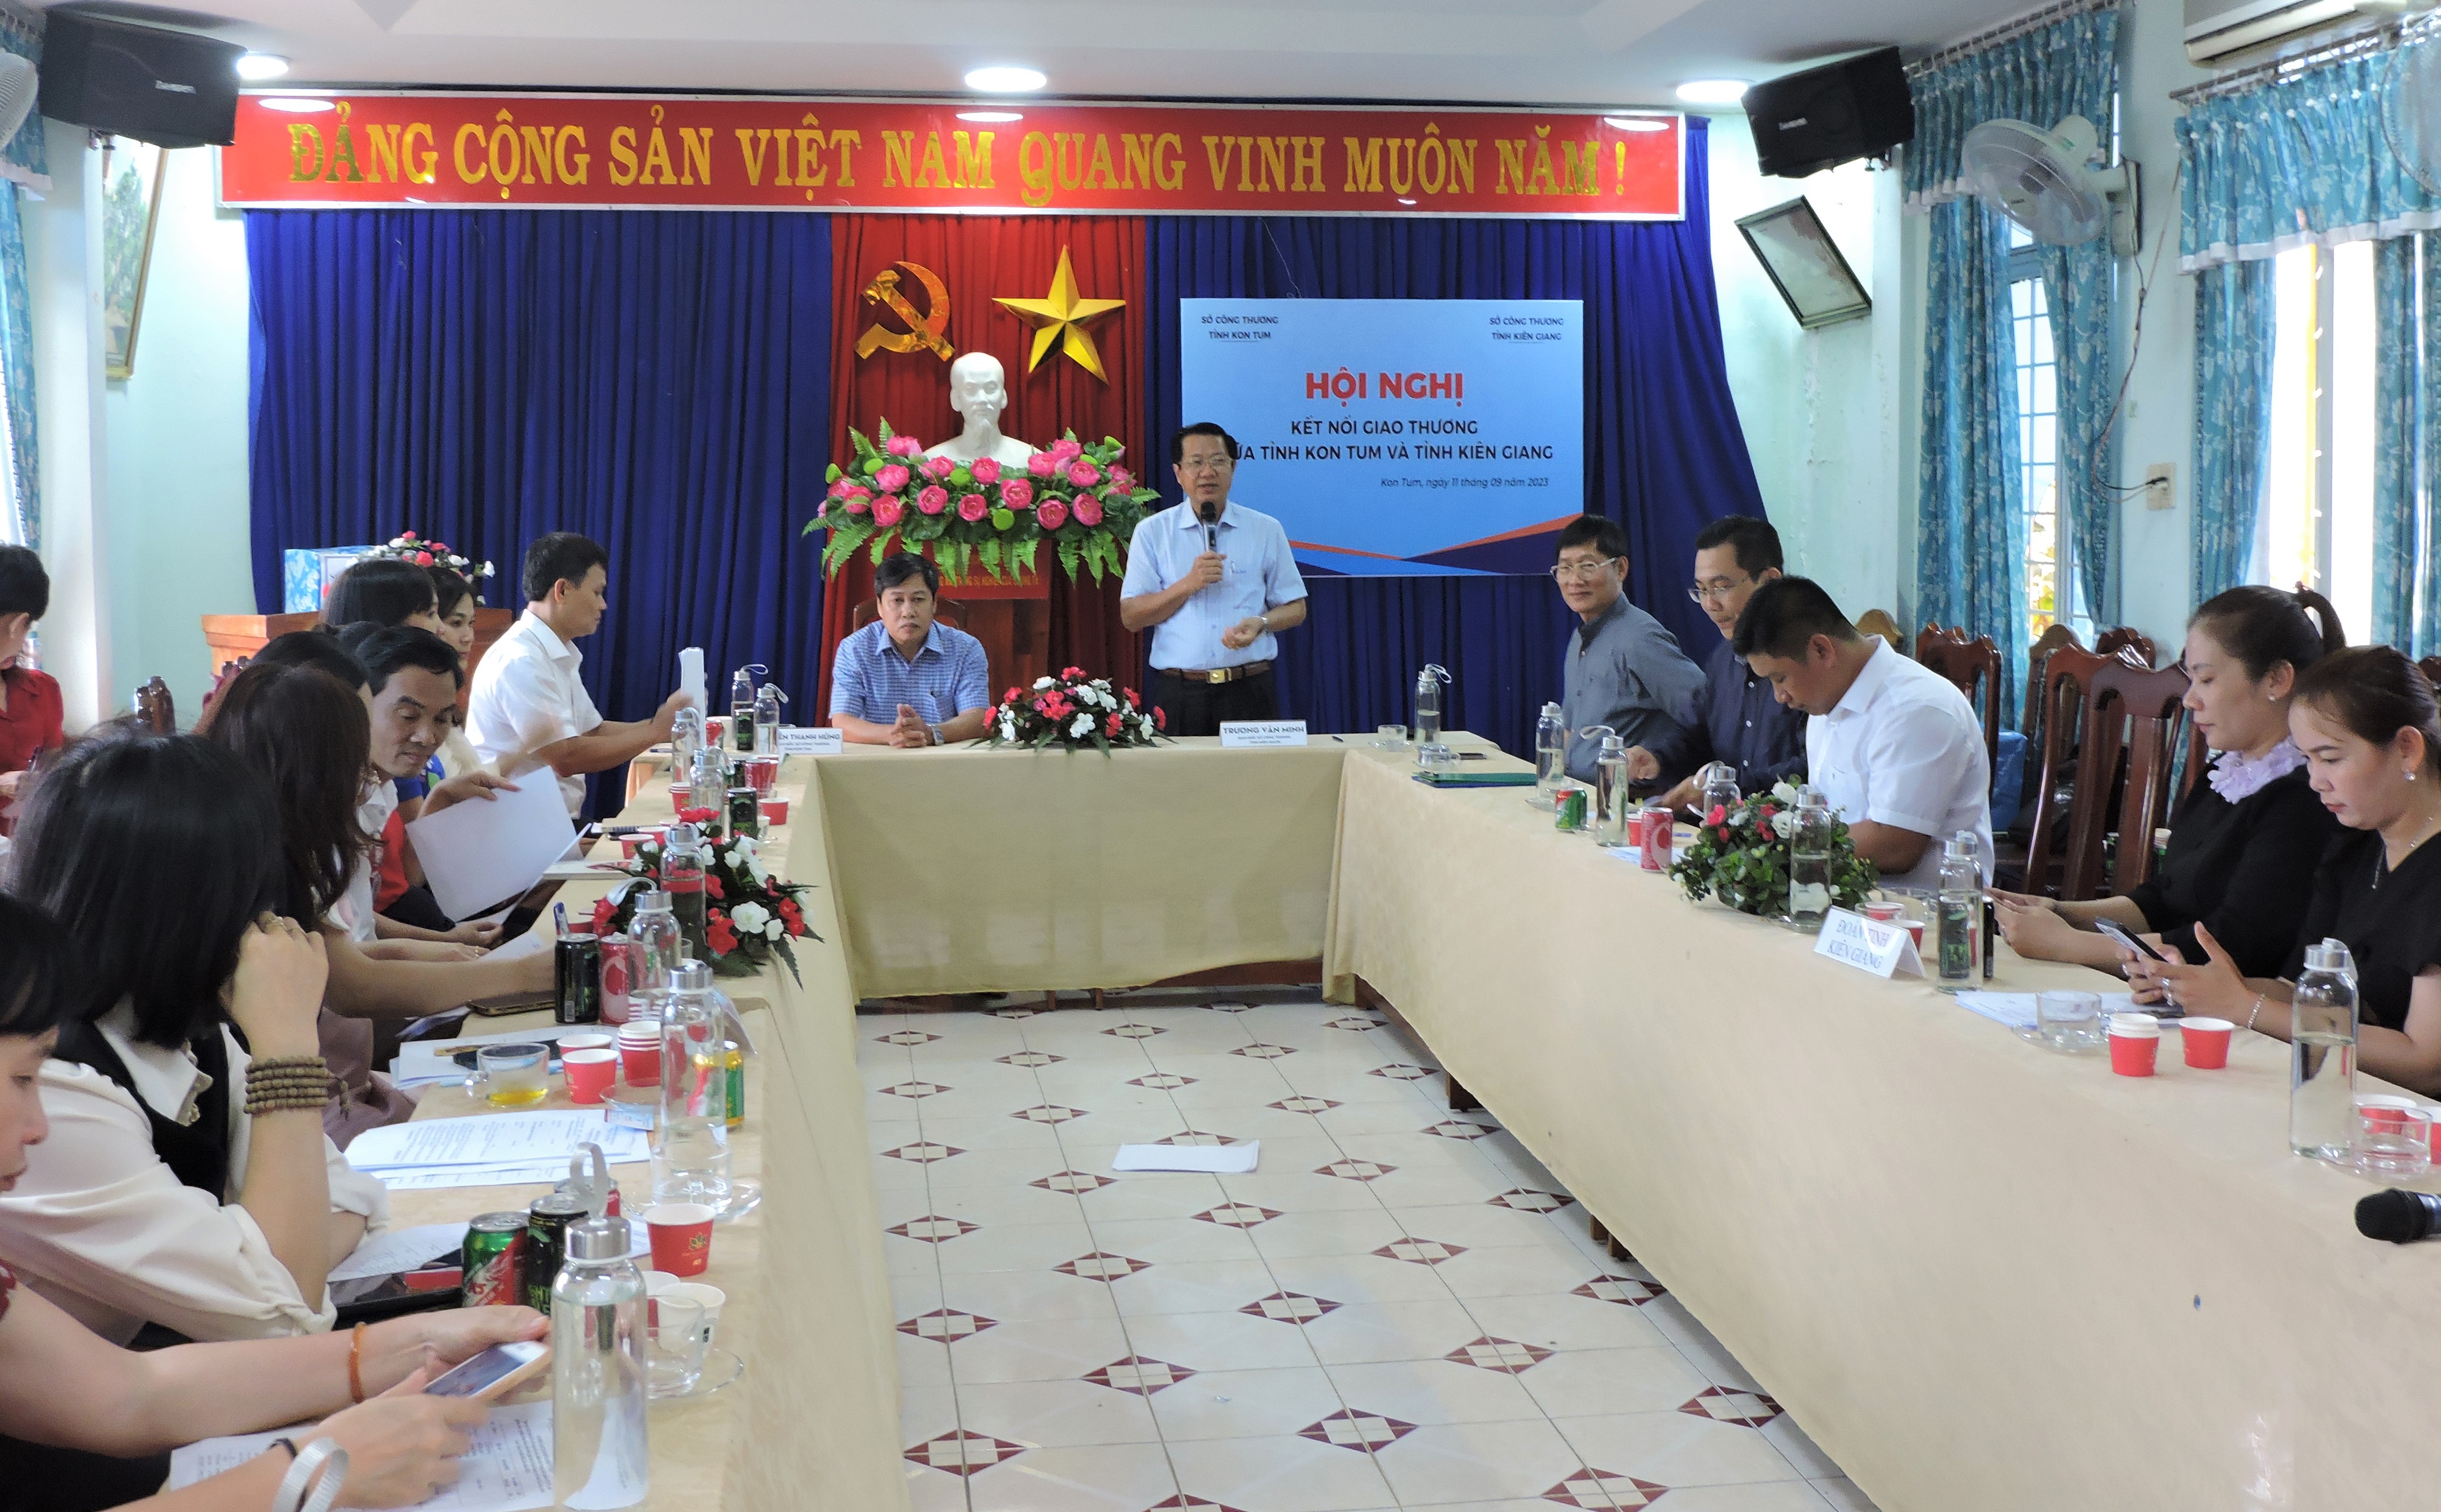 Hội nghị kết nối cung- cầu hàng hóa tỉnh Kon Tum và tỉnh Kiên Giang